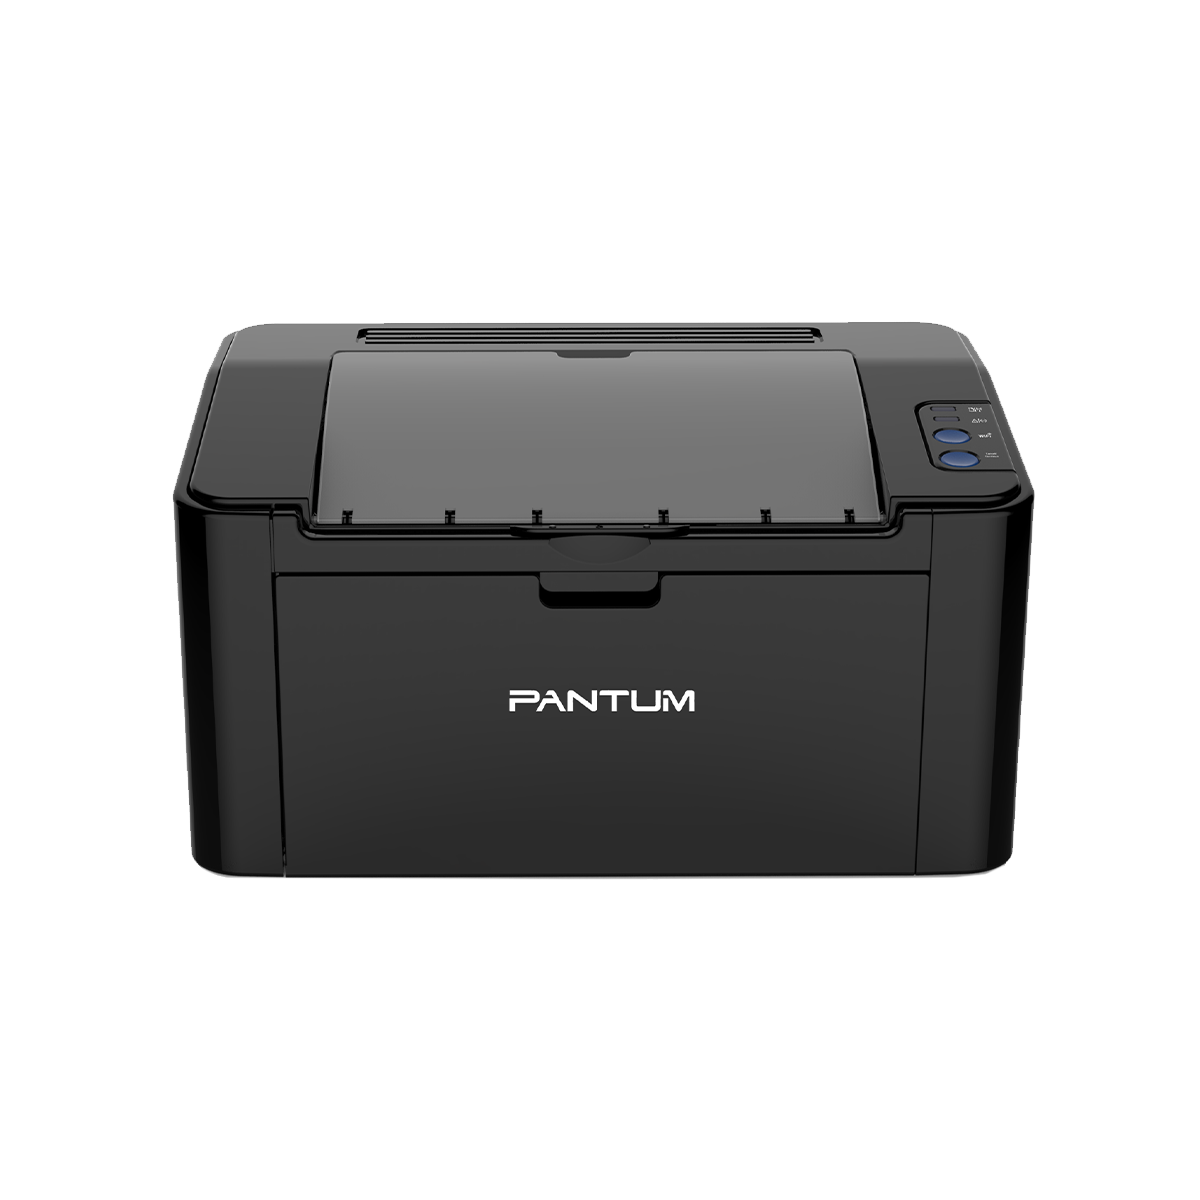 Принтер лазерный Pantum P2500 (A4, 128Mb, 22 стр / мин,1200*1200dpi, USB2.0, PC-211EV) черный